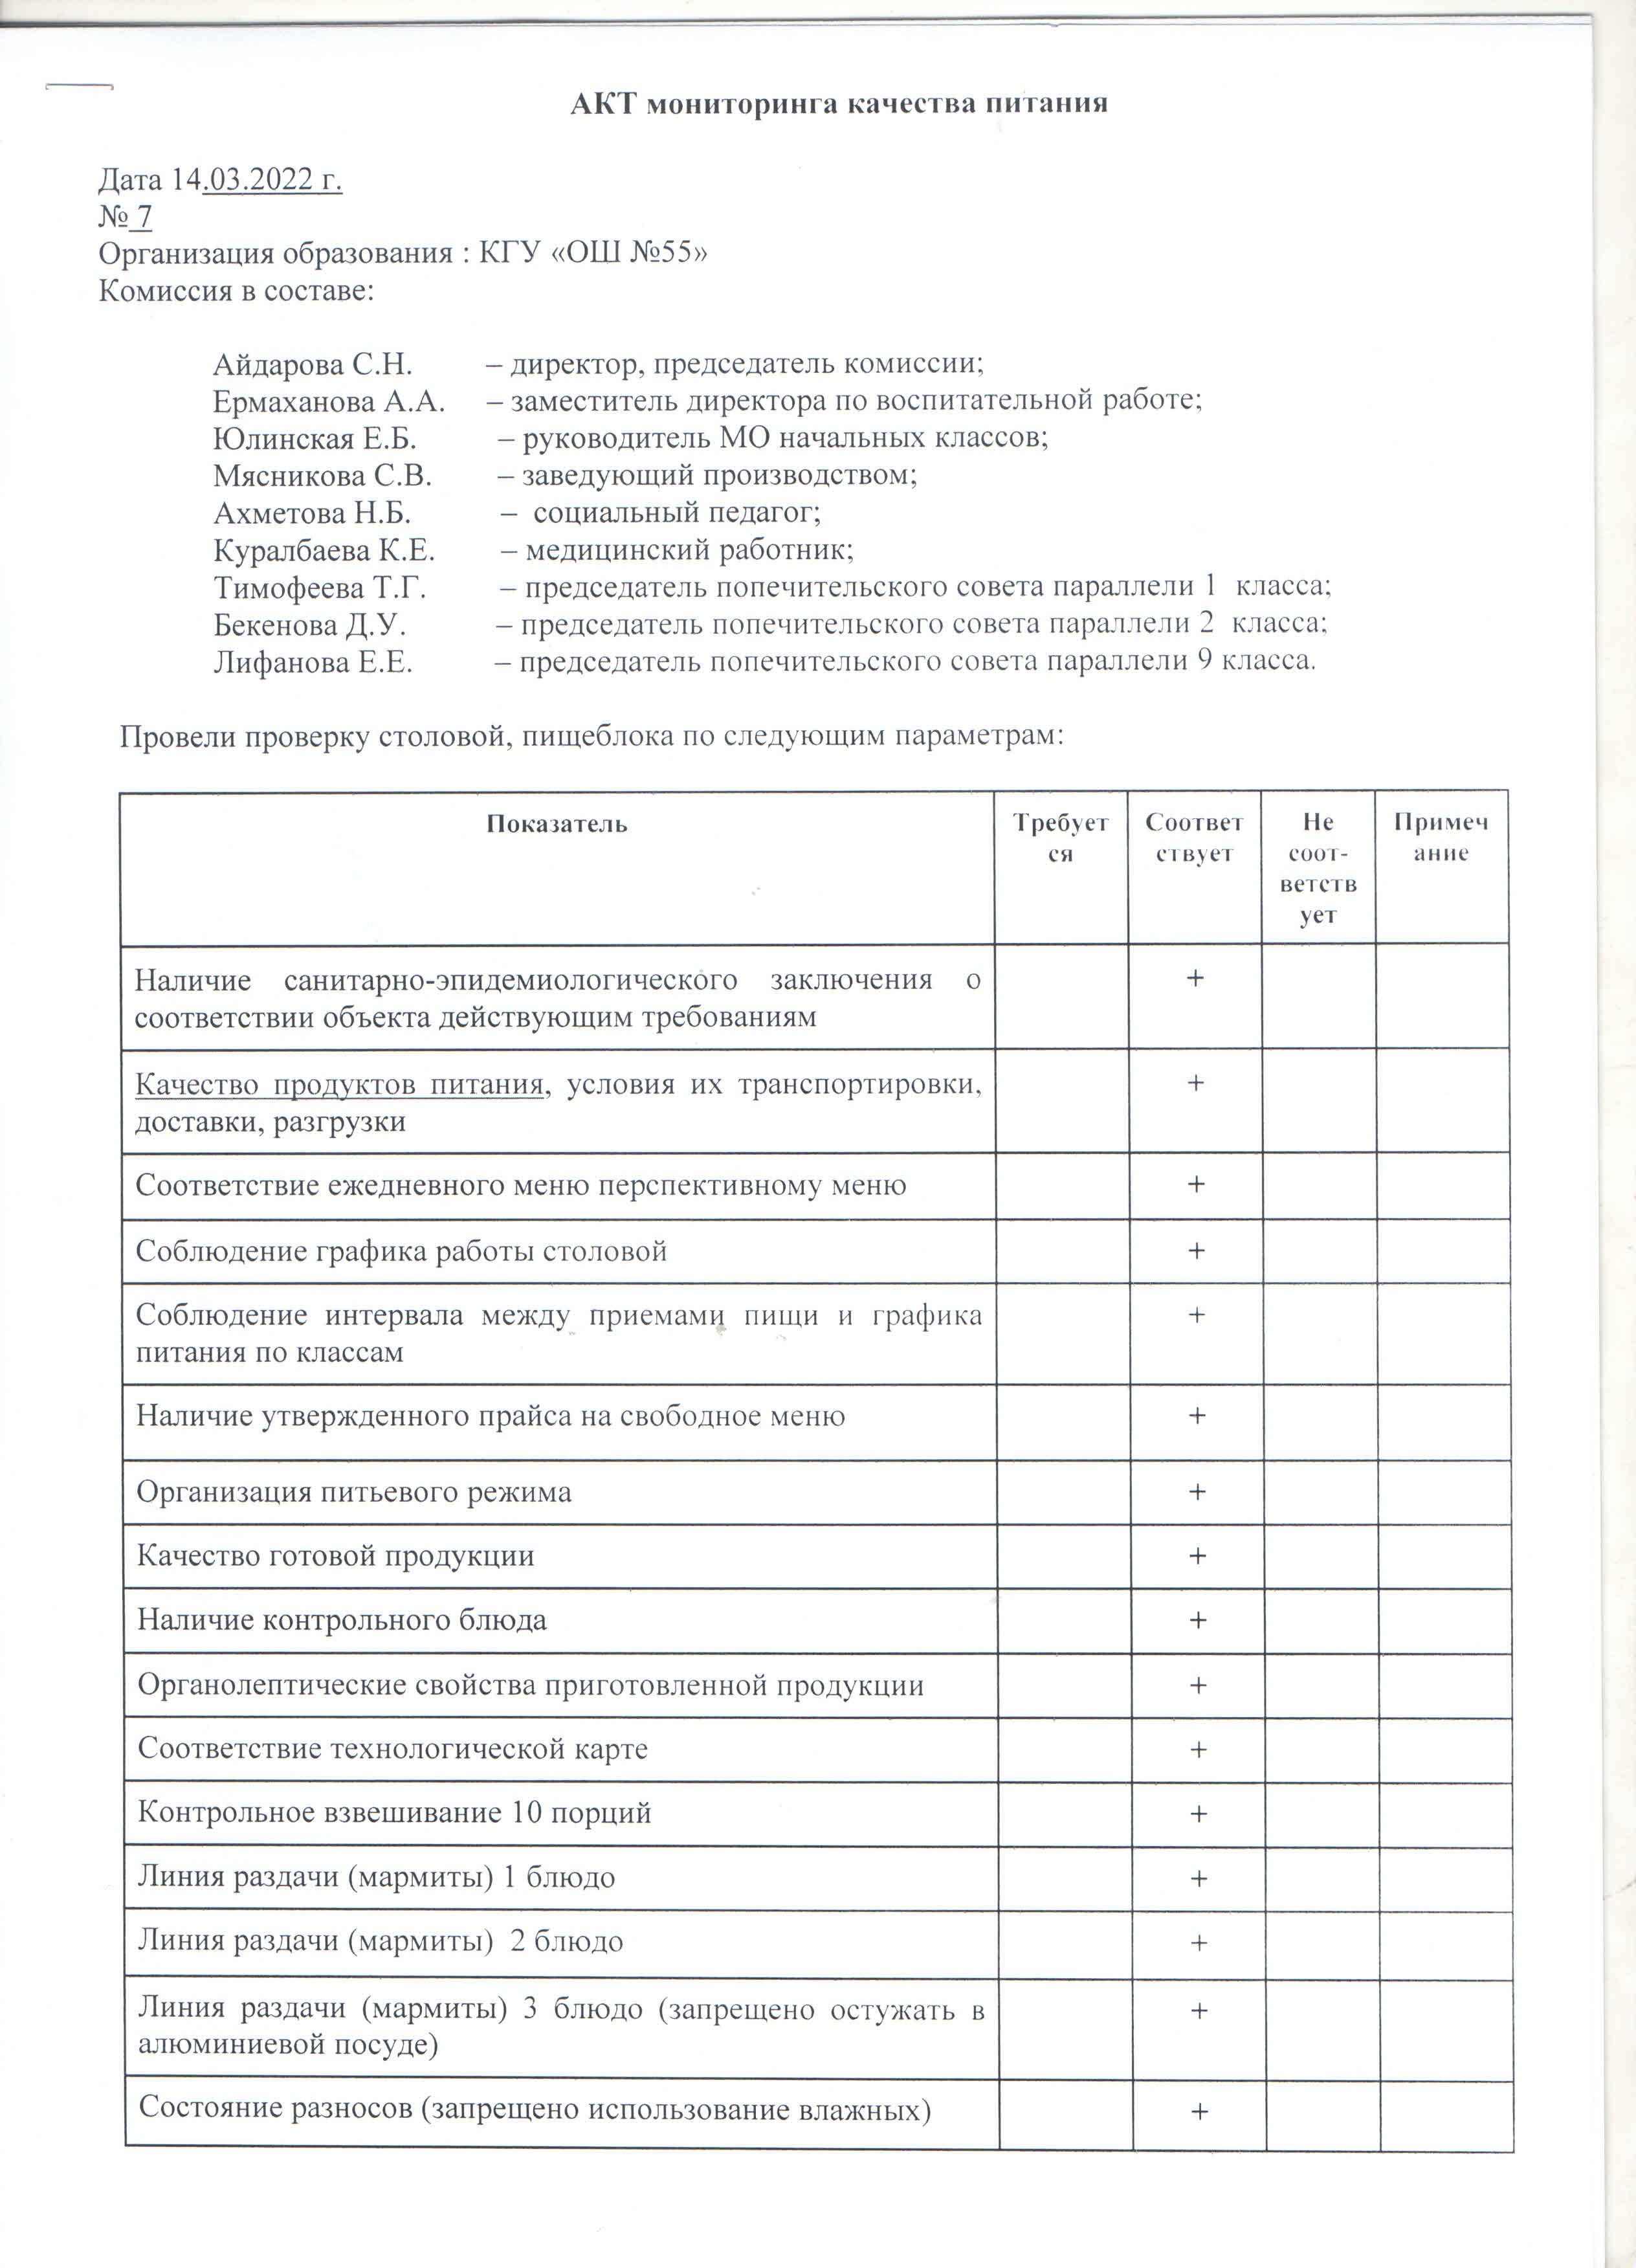 Акт №7 бракеражной комиссии по мониторингу качества питания в столовой КГУ "ОШ №55 от 14.03.2022 г.